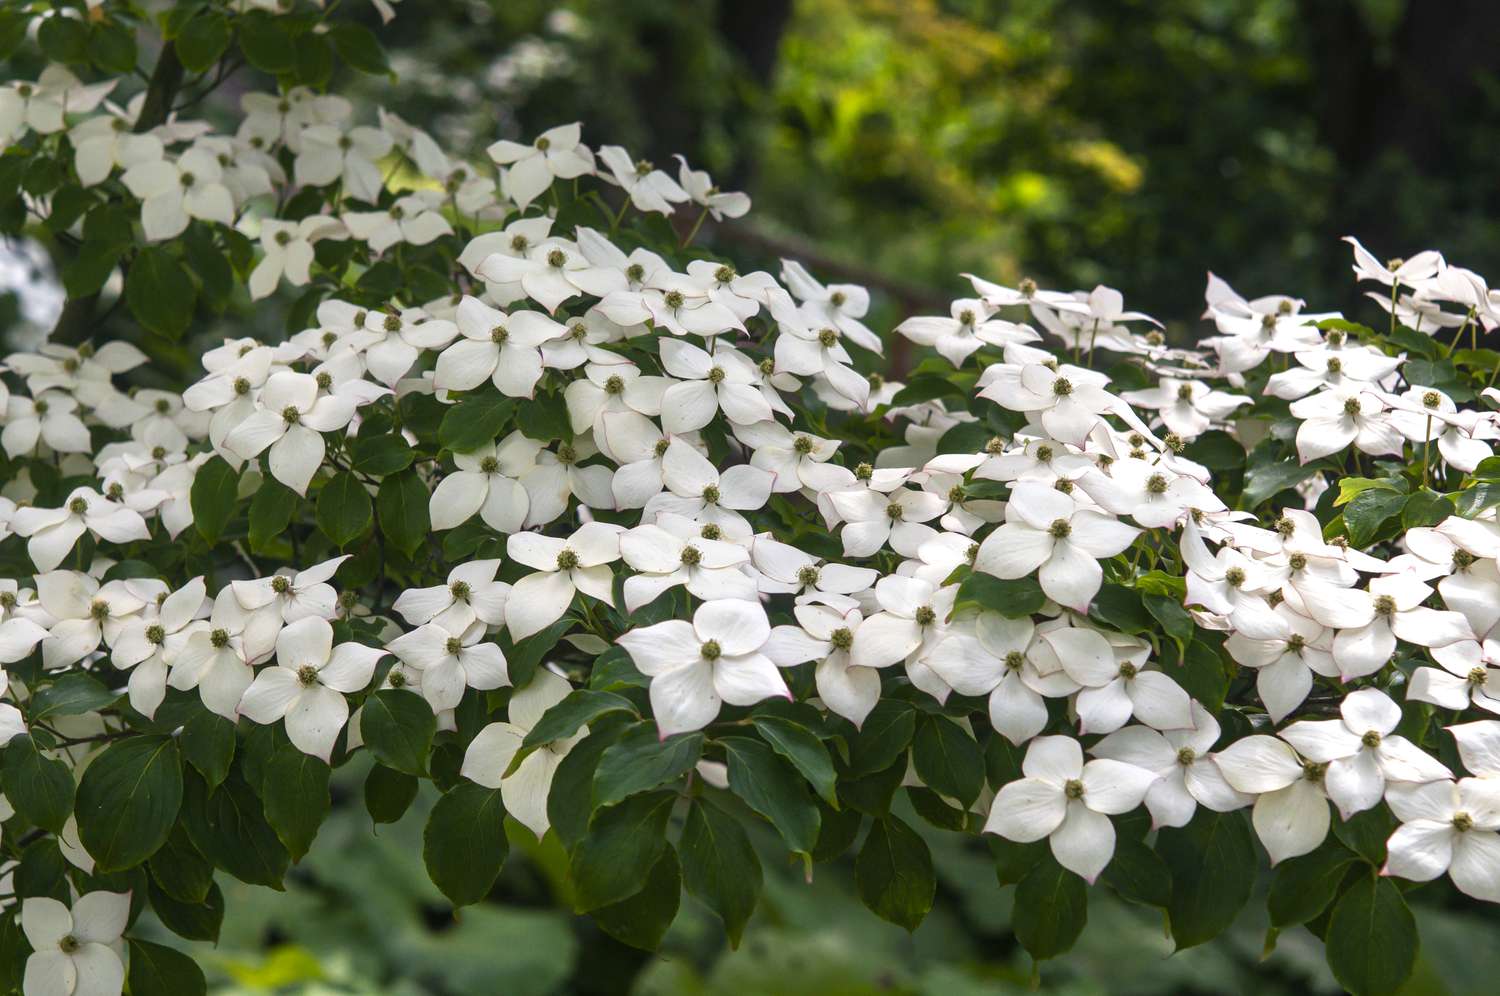 Kousa eurostar dogwood Baumzweige mit weißen Blüten